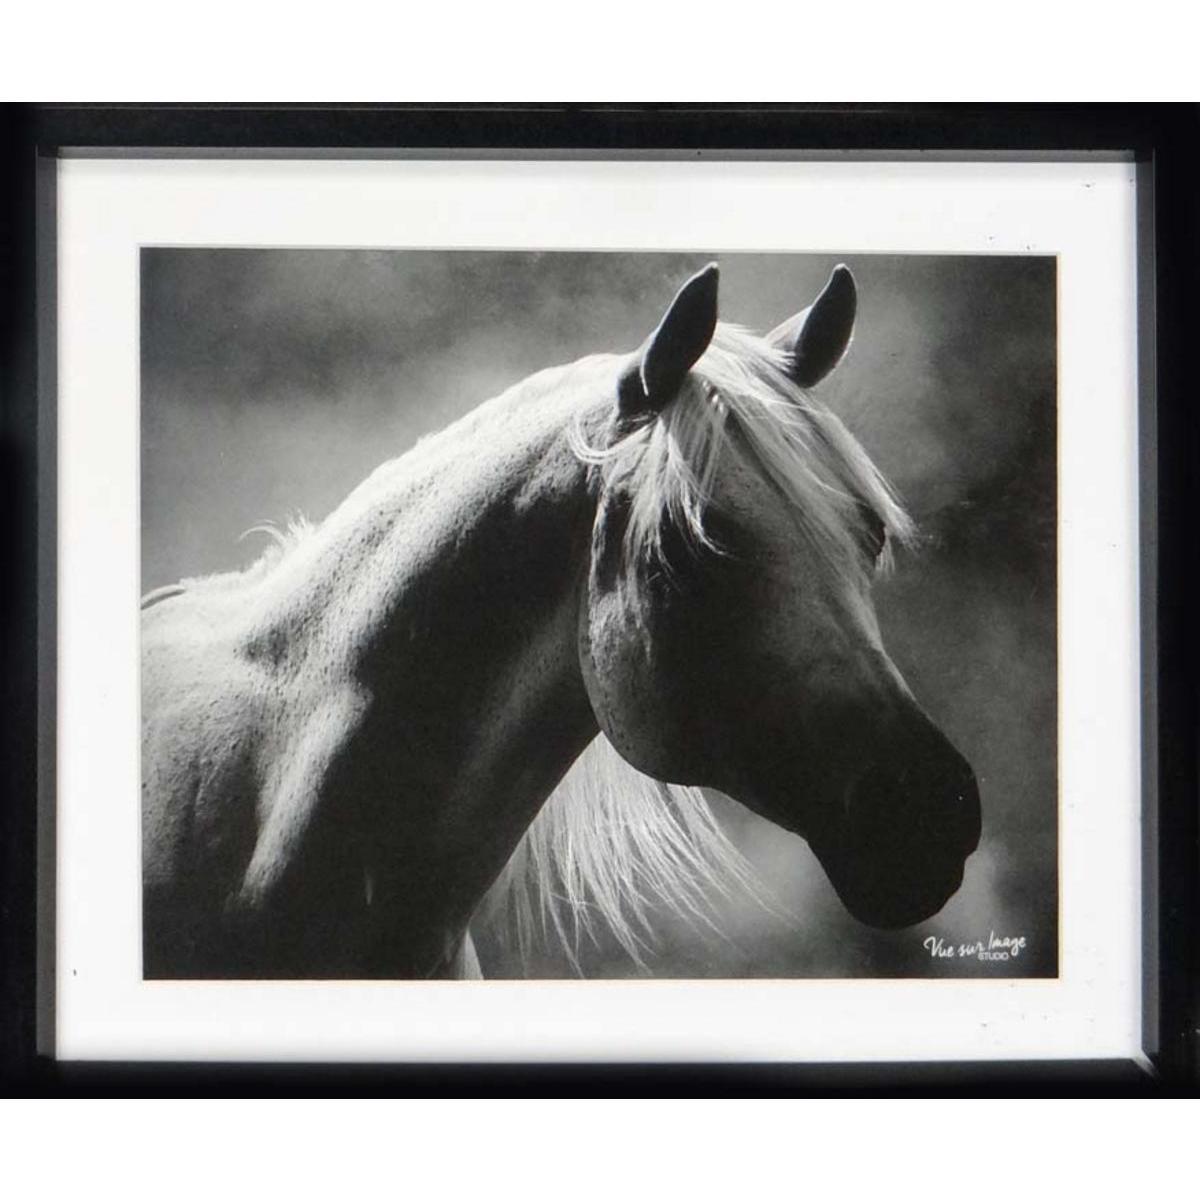 Cadre photo décoratif - Plastique - 30 x 25 cm - Noir et blanc